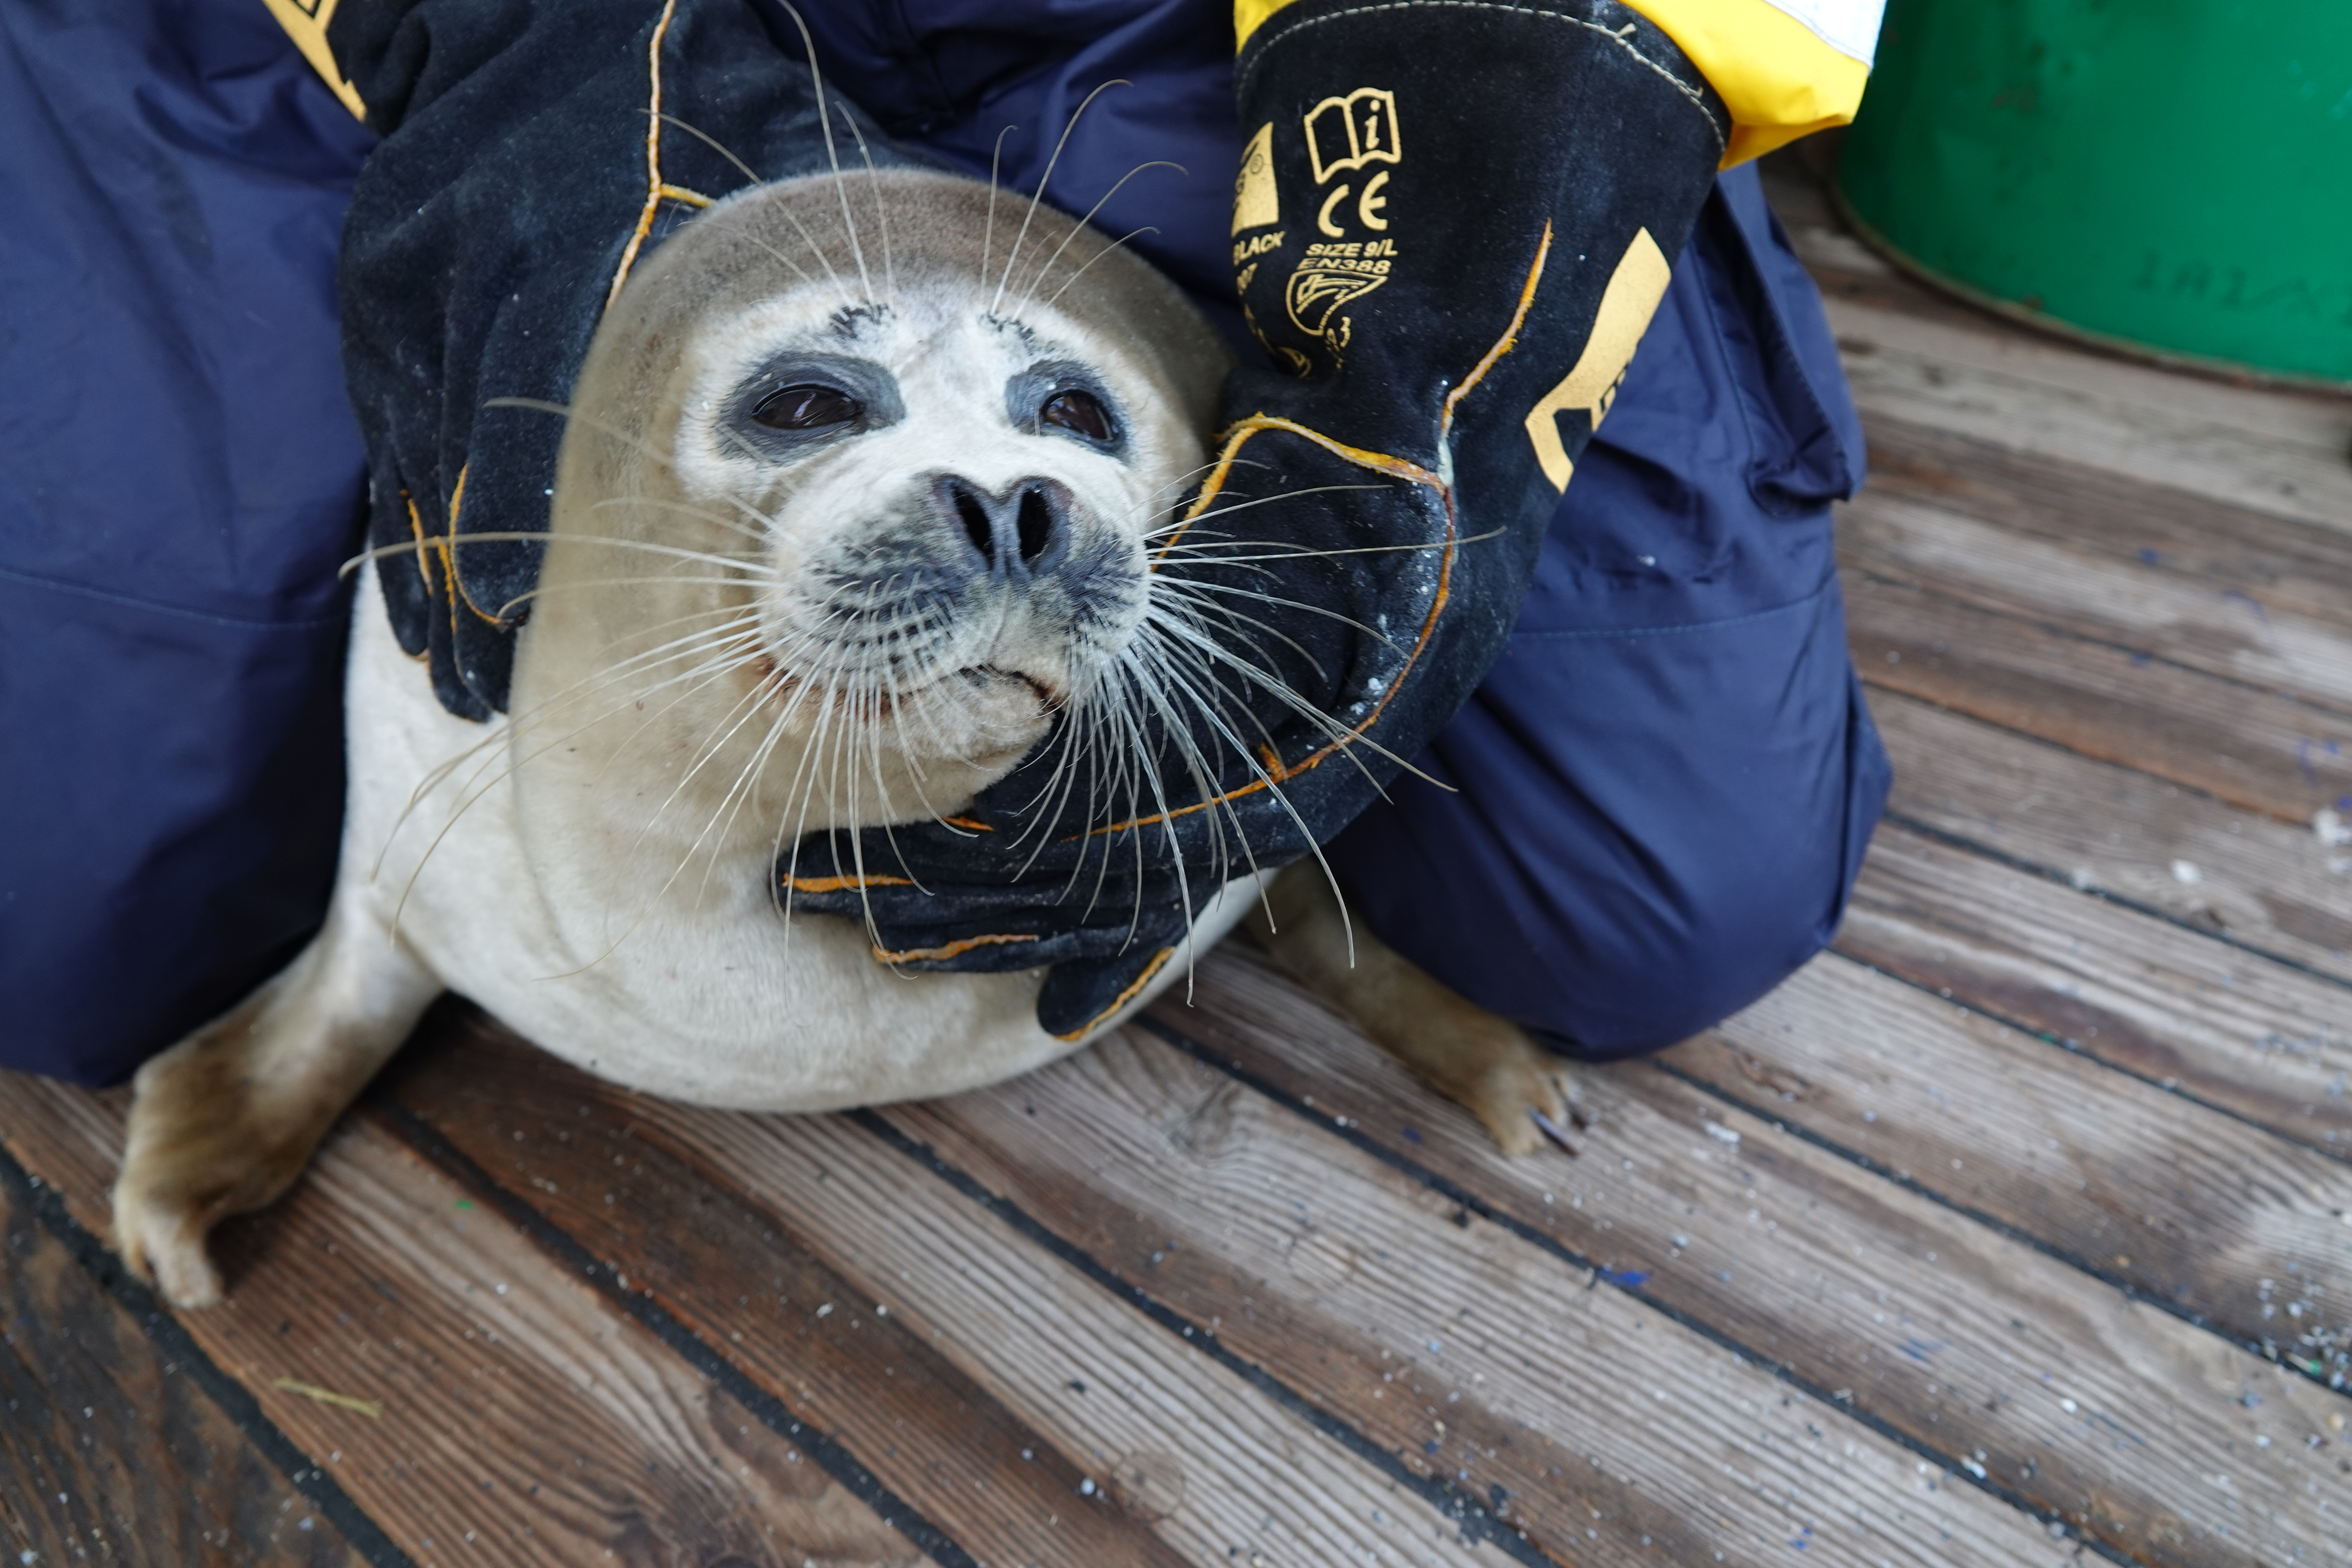 Каспийского тюленя надо крепко держать, иначе он может покусать своими острыми зубами